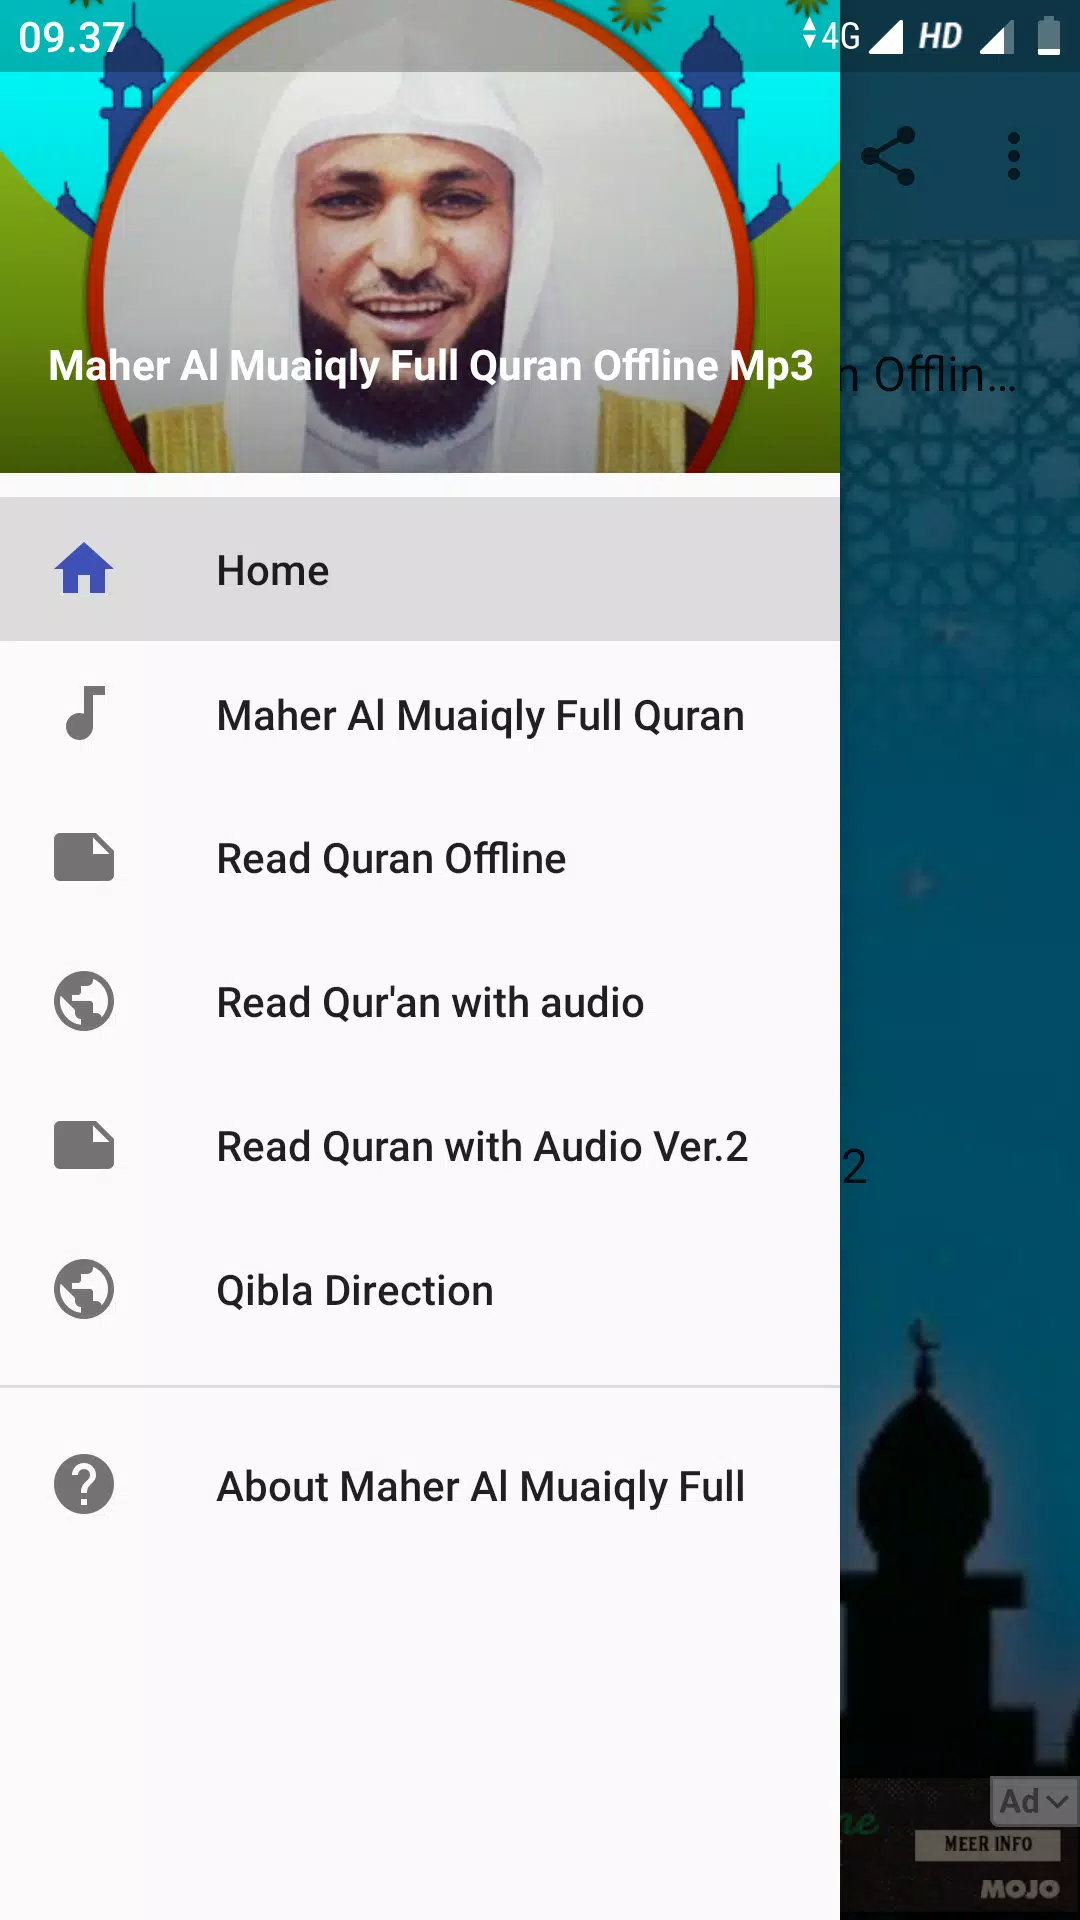 Maher Al Muaiqly Full Quran Offline Mp3 APK for Android Download